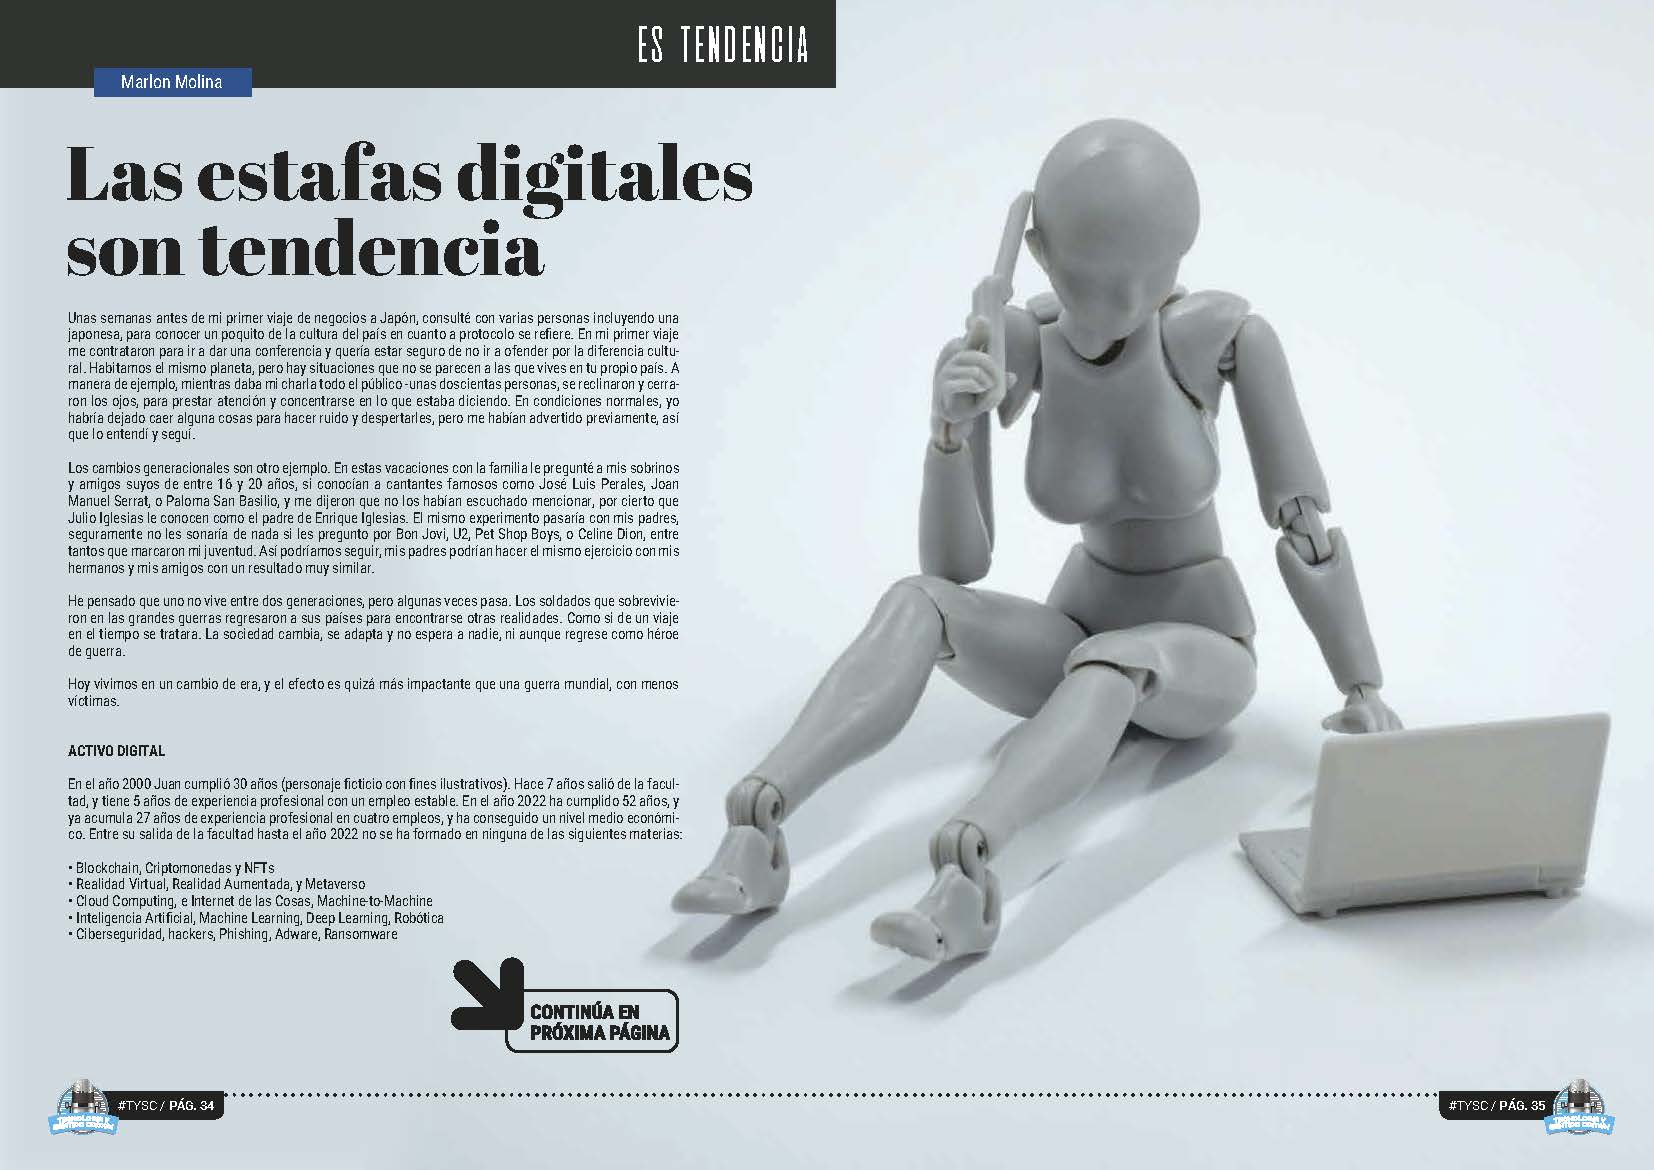 Articulo "Las estafas digitales son tendencia" de Marlon Molina en la Sección "Es Tendencia" de la Revista Tecnología y Sentido Común #TYSC